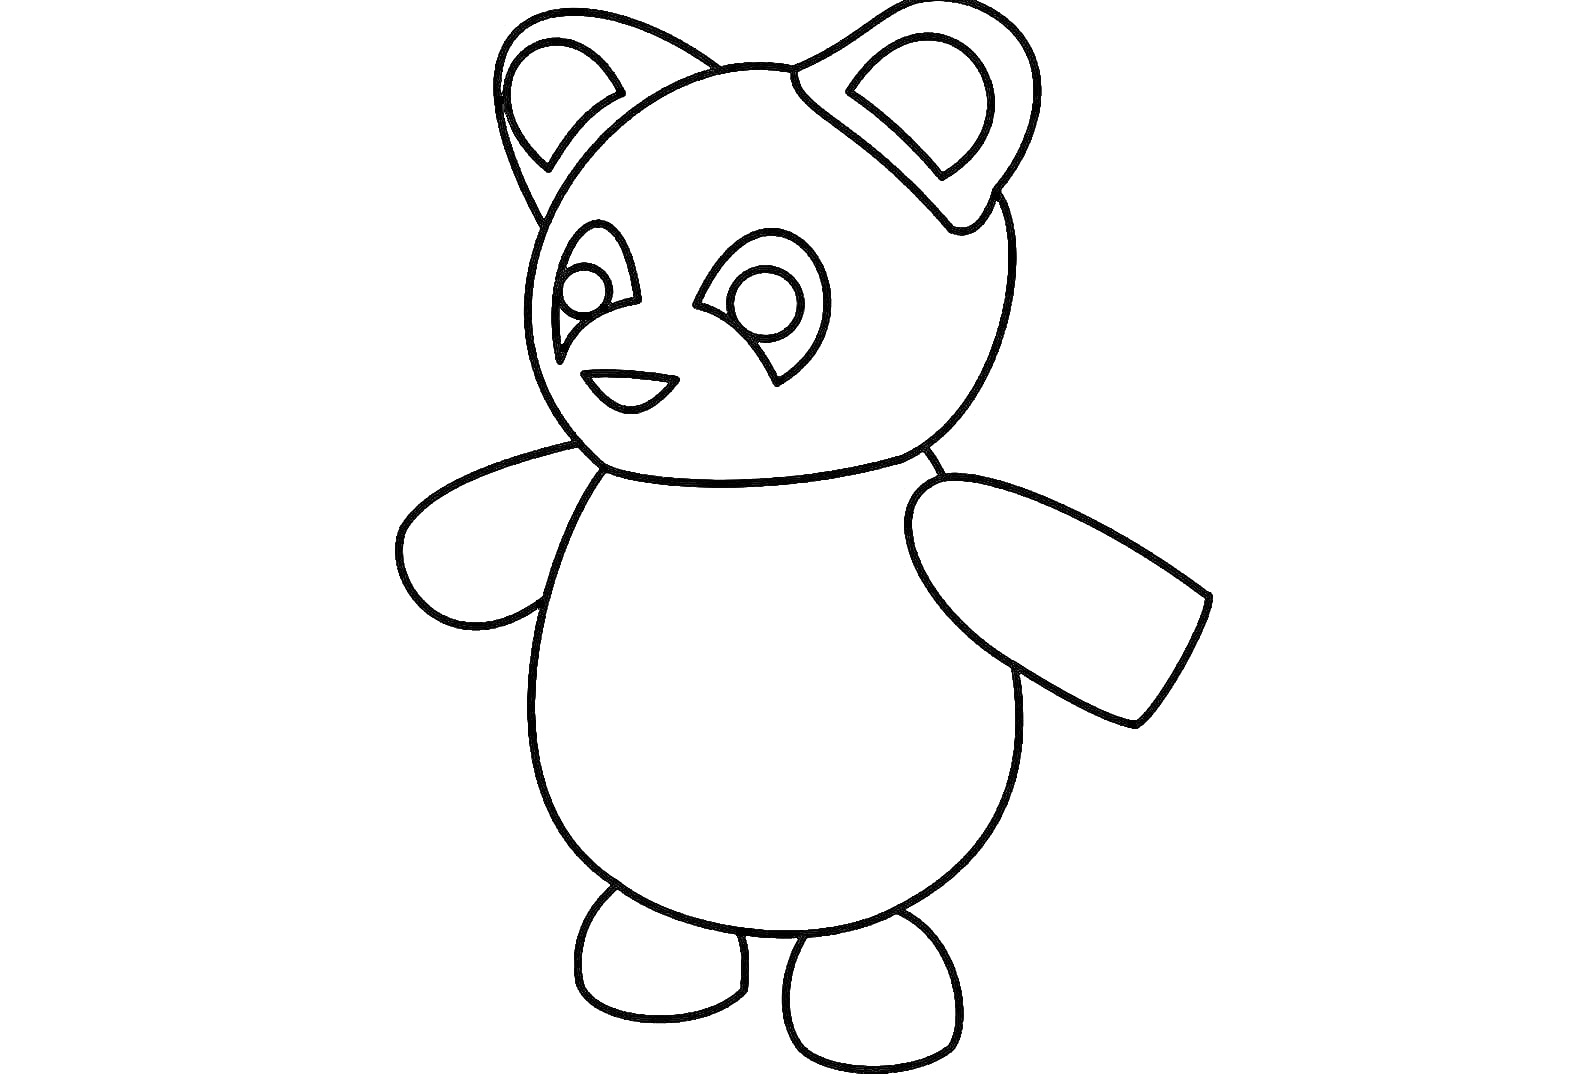 Раскраска Панда из игры Адопт Ми с большими ушами и черными пятнами вокруг глаз